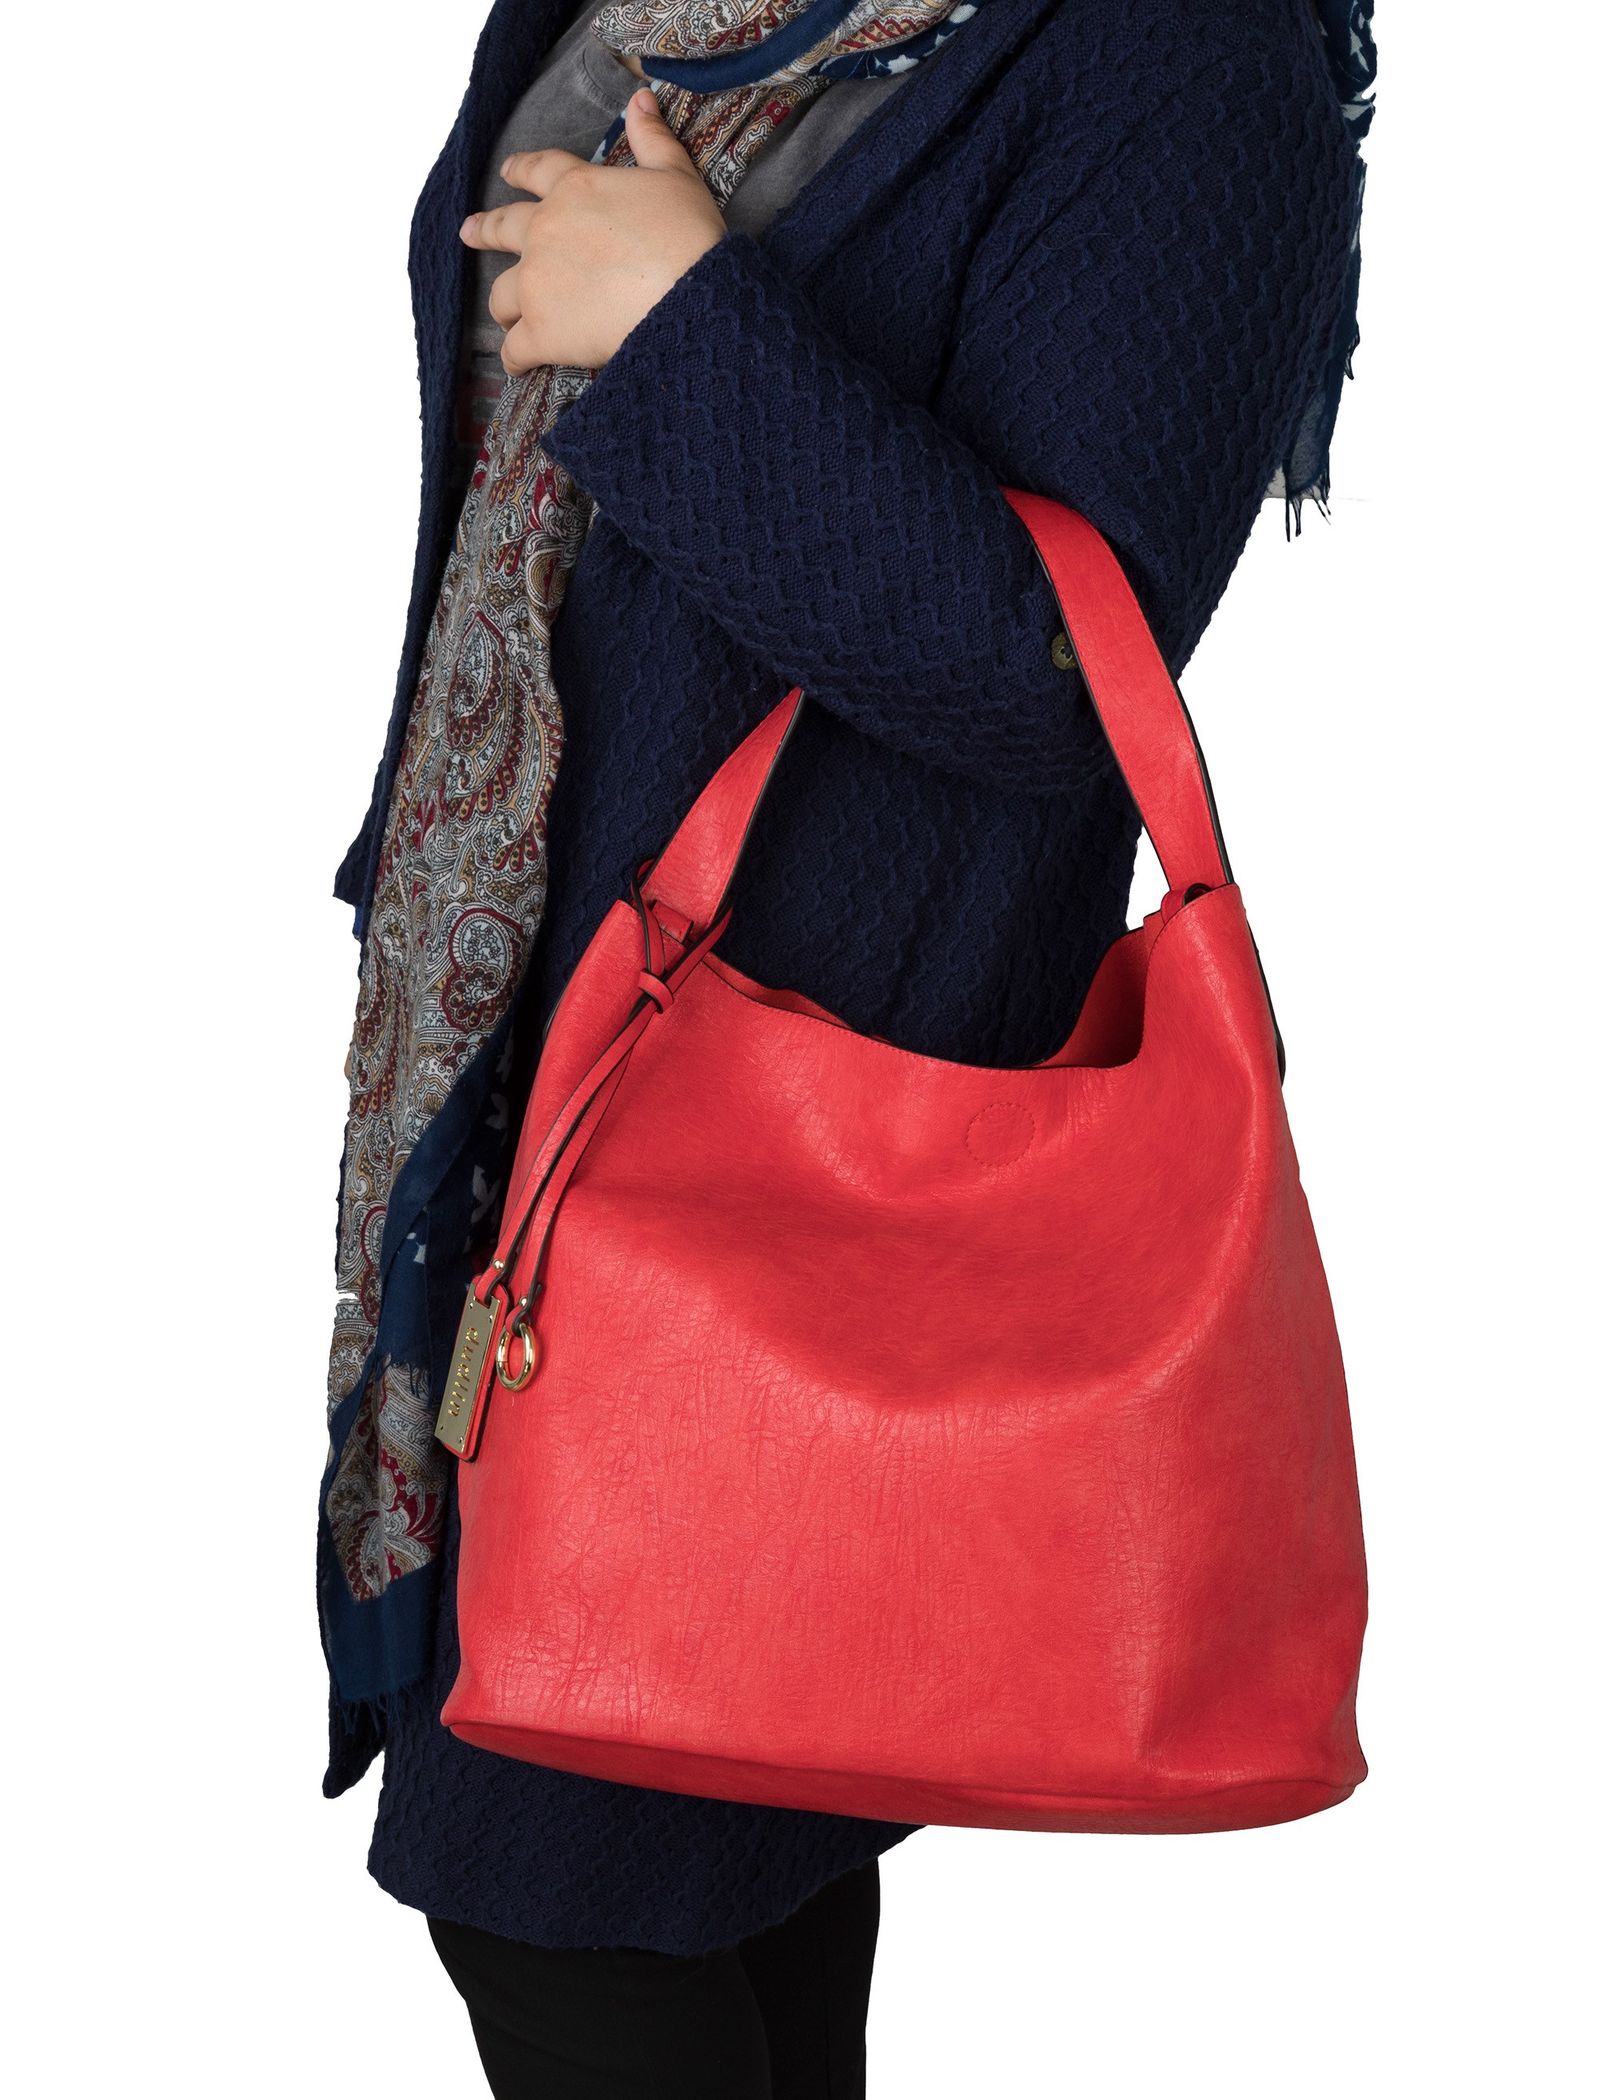 کیف دستی روزمره زنانه - دادلین تک سایز - قرمز - 11